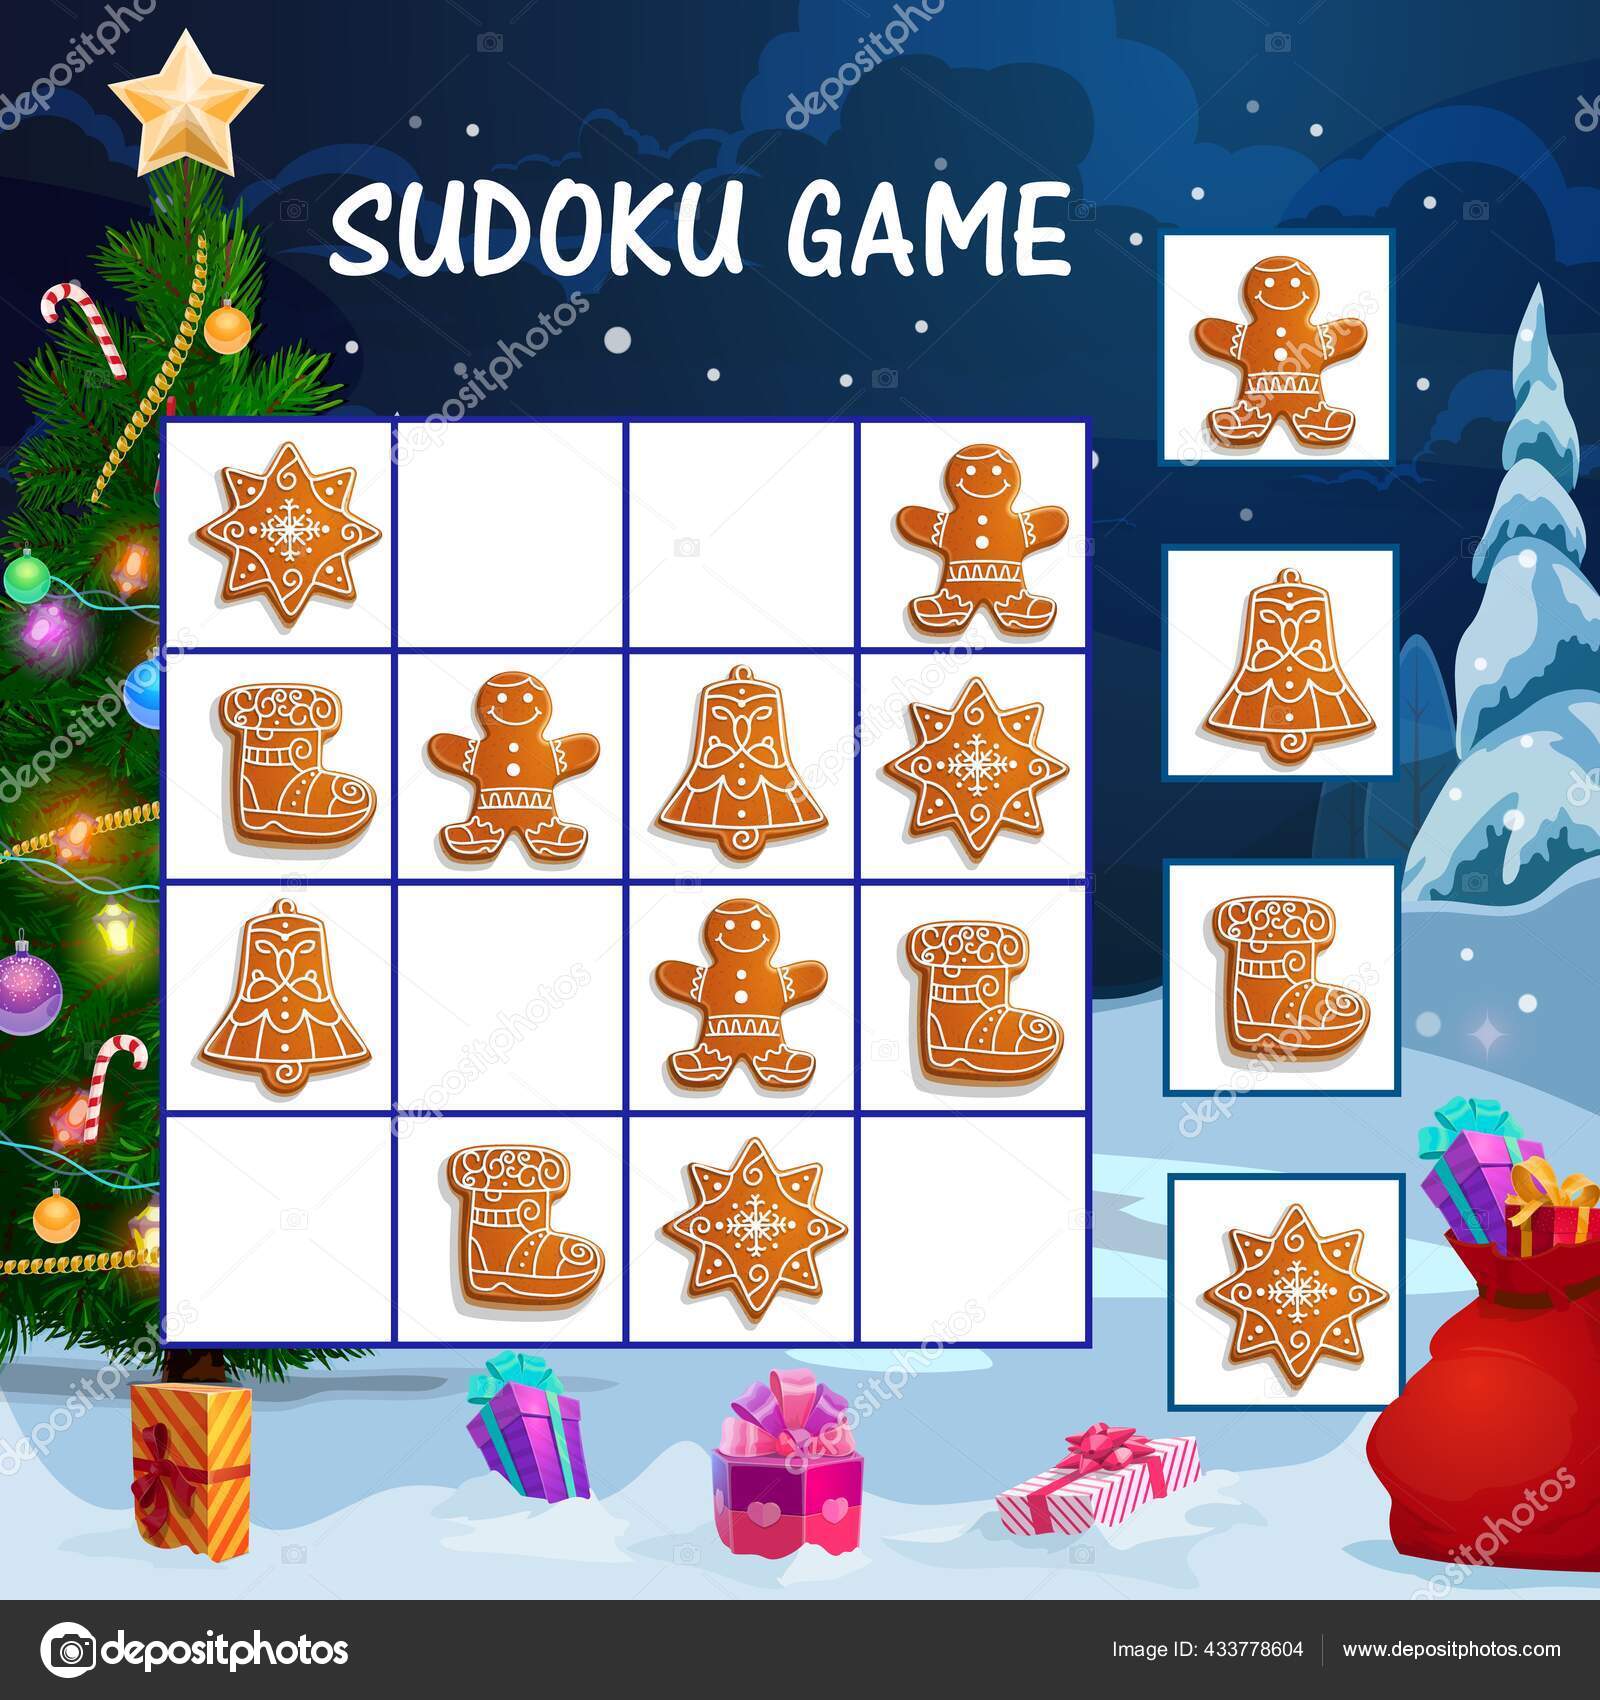 jogo de sudoku para crianças com fotos. feliz Natal e Feliz Ano